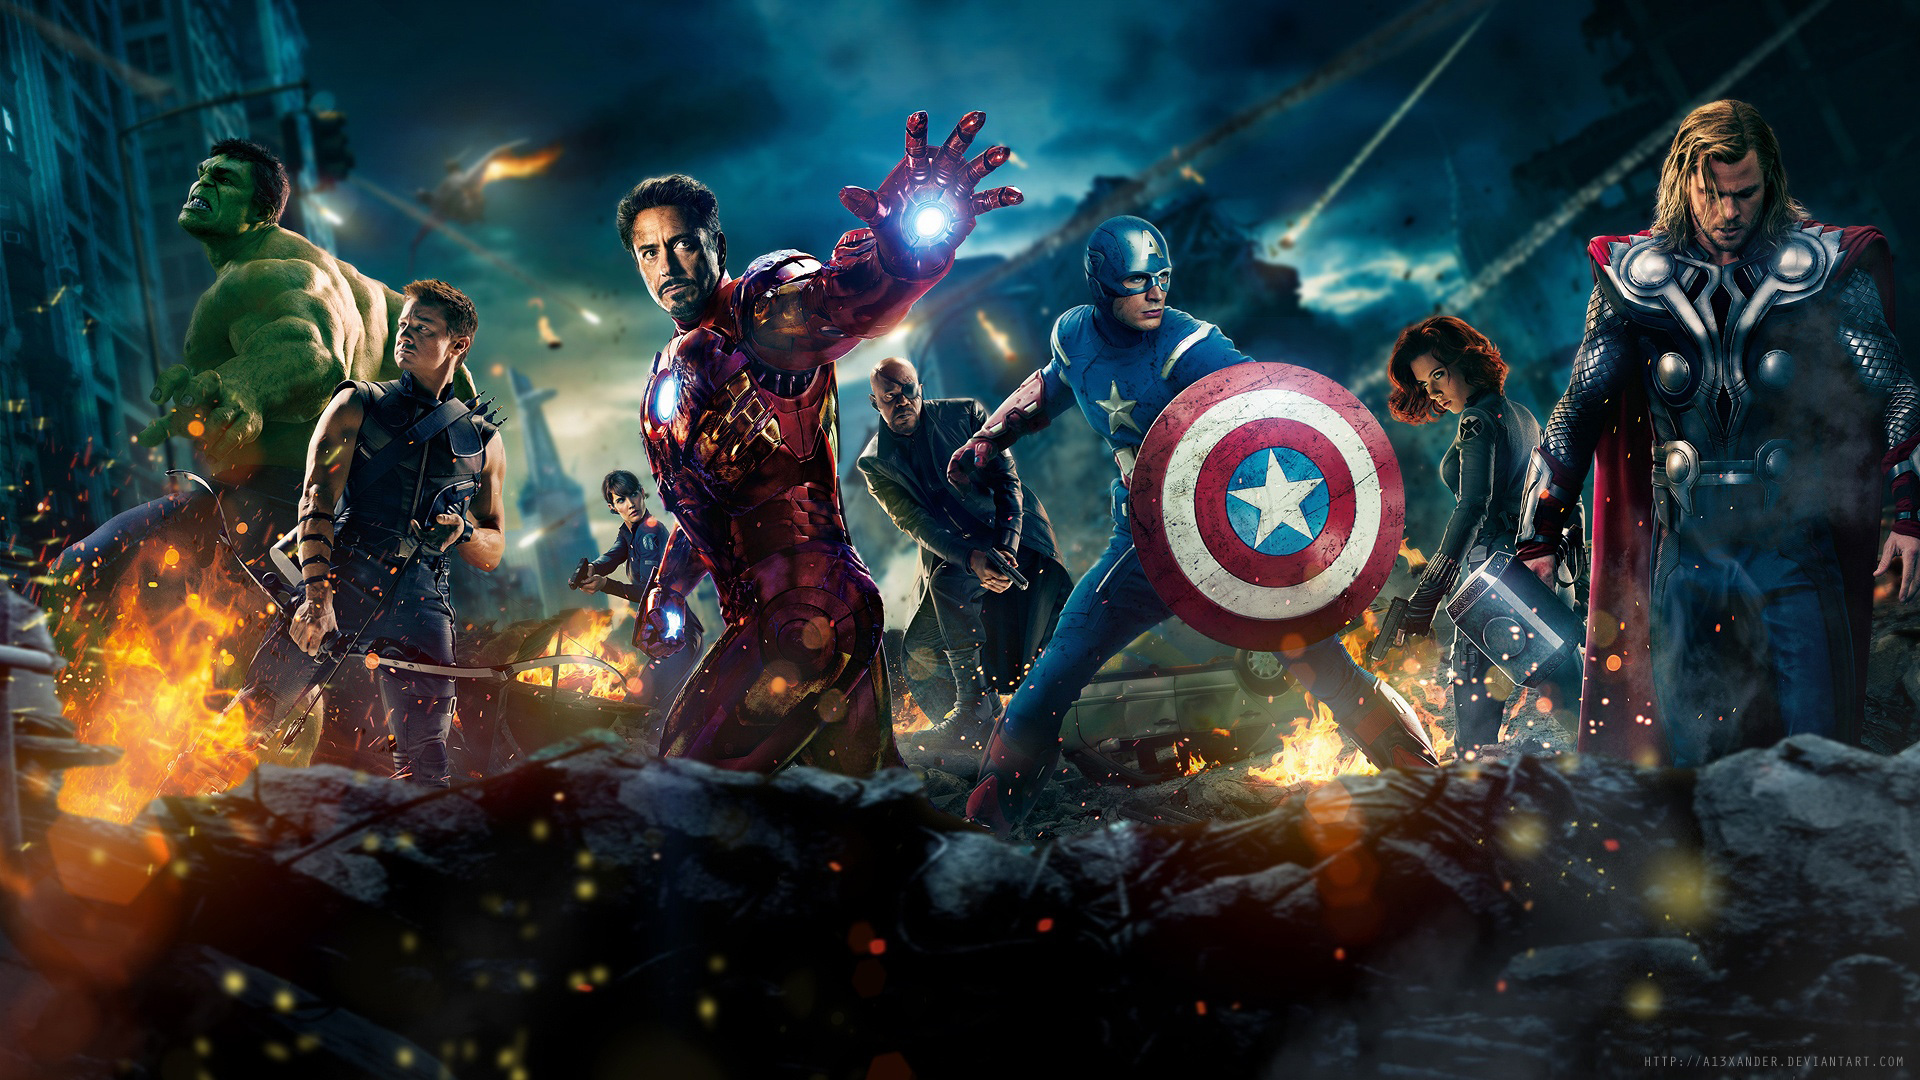 42+] Avengers HD Wallpapers 1080p - WallpaperSafari